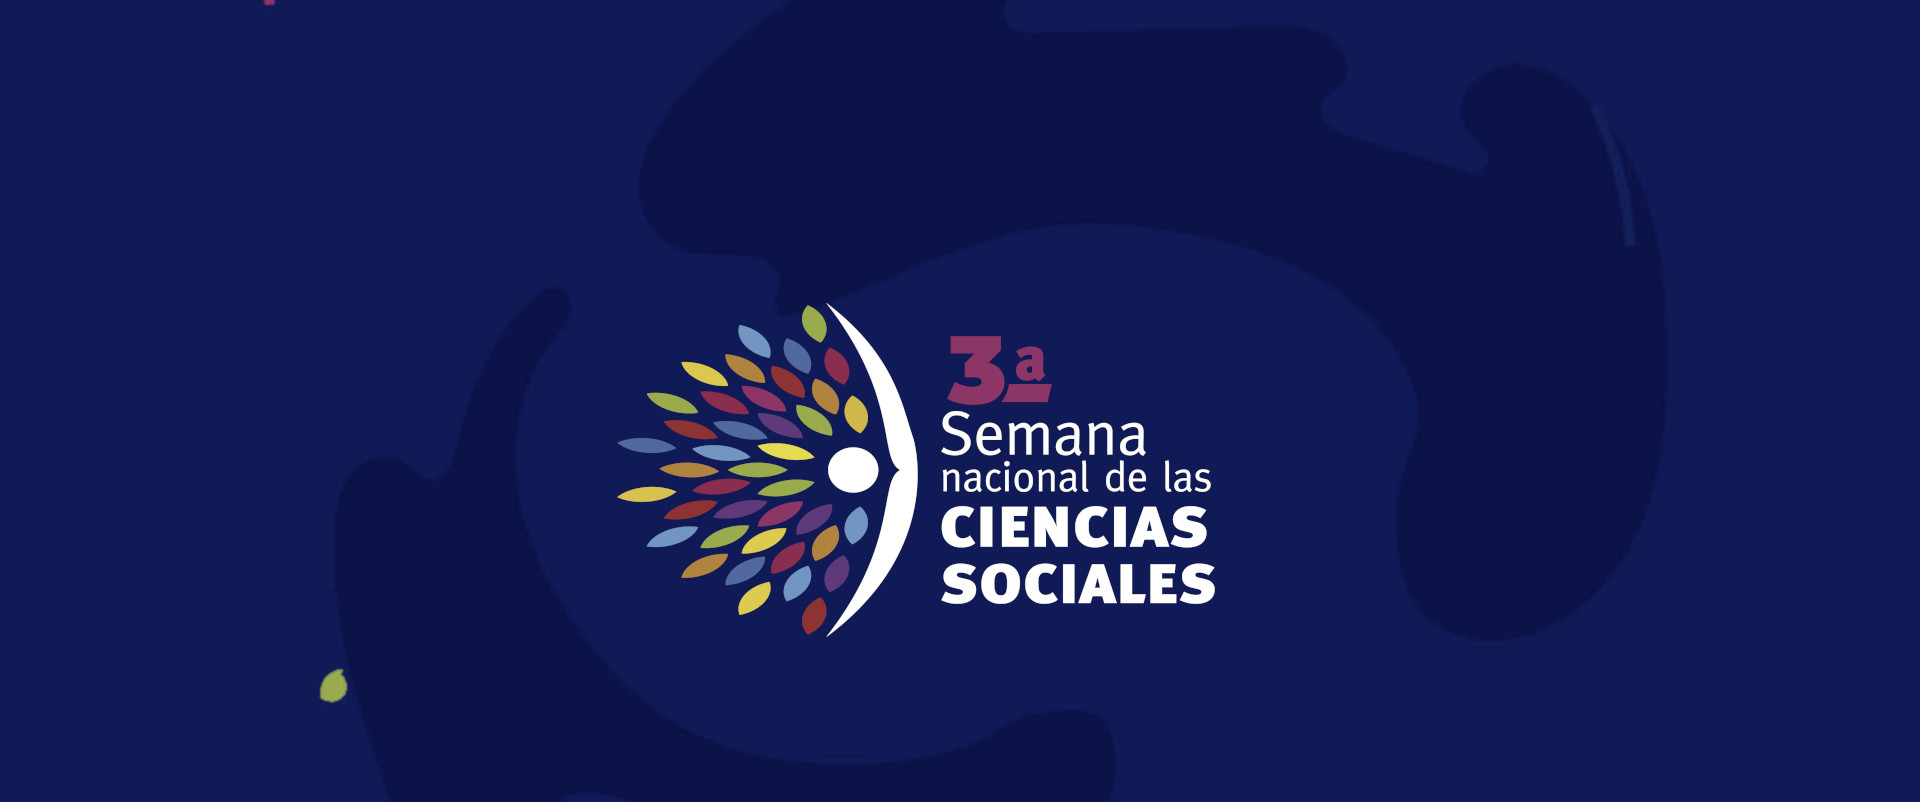 3a Semana Nacional de Ciencias Sociales